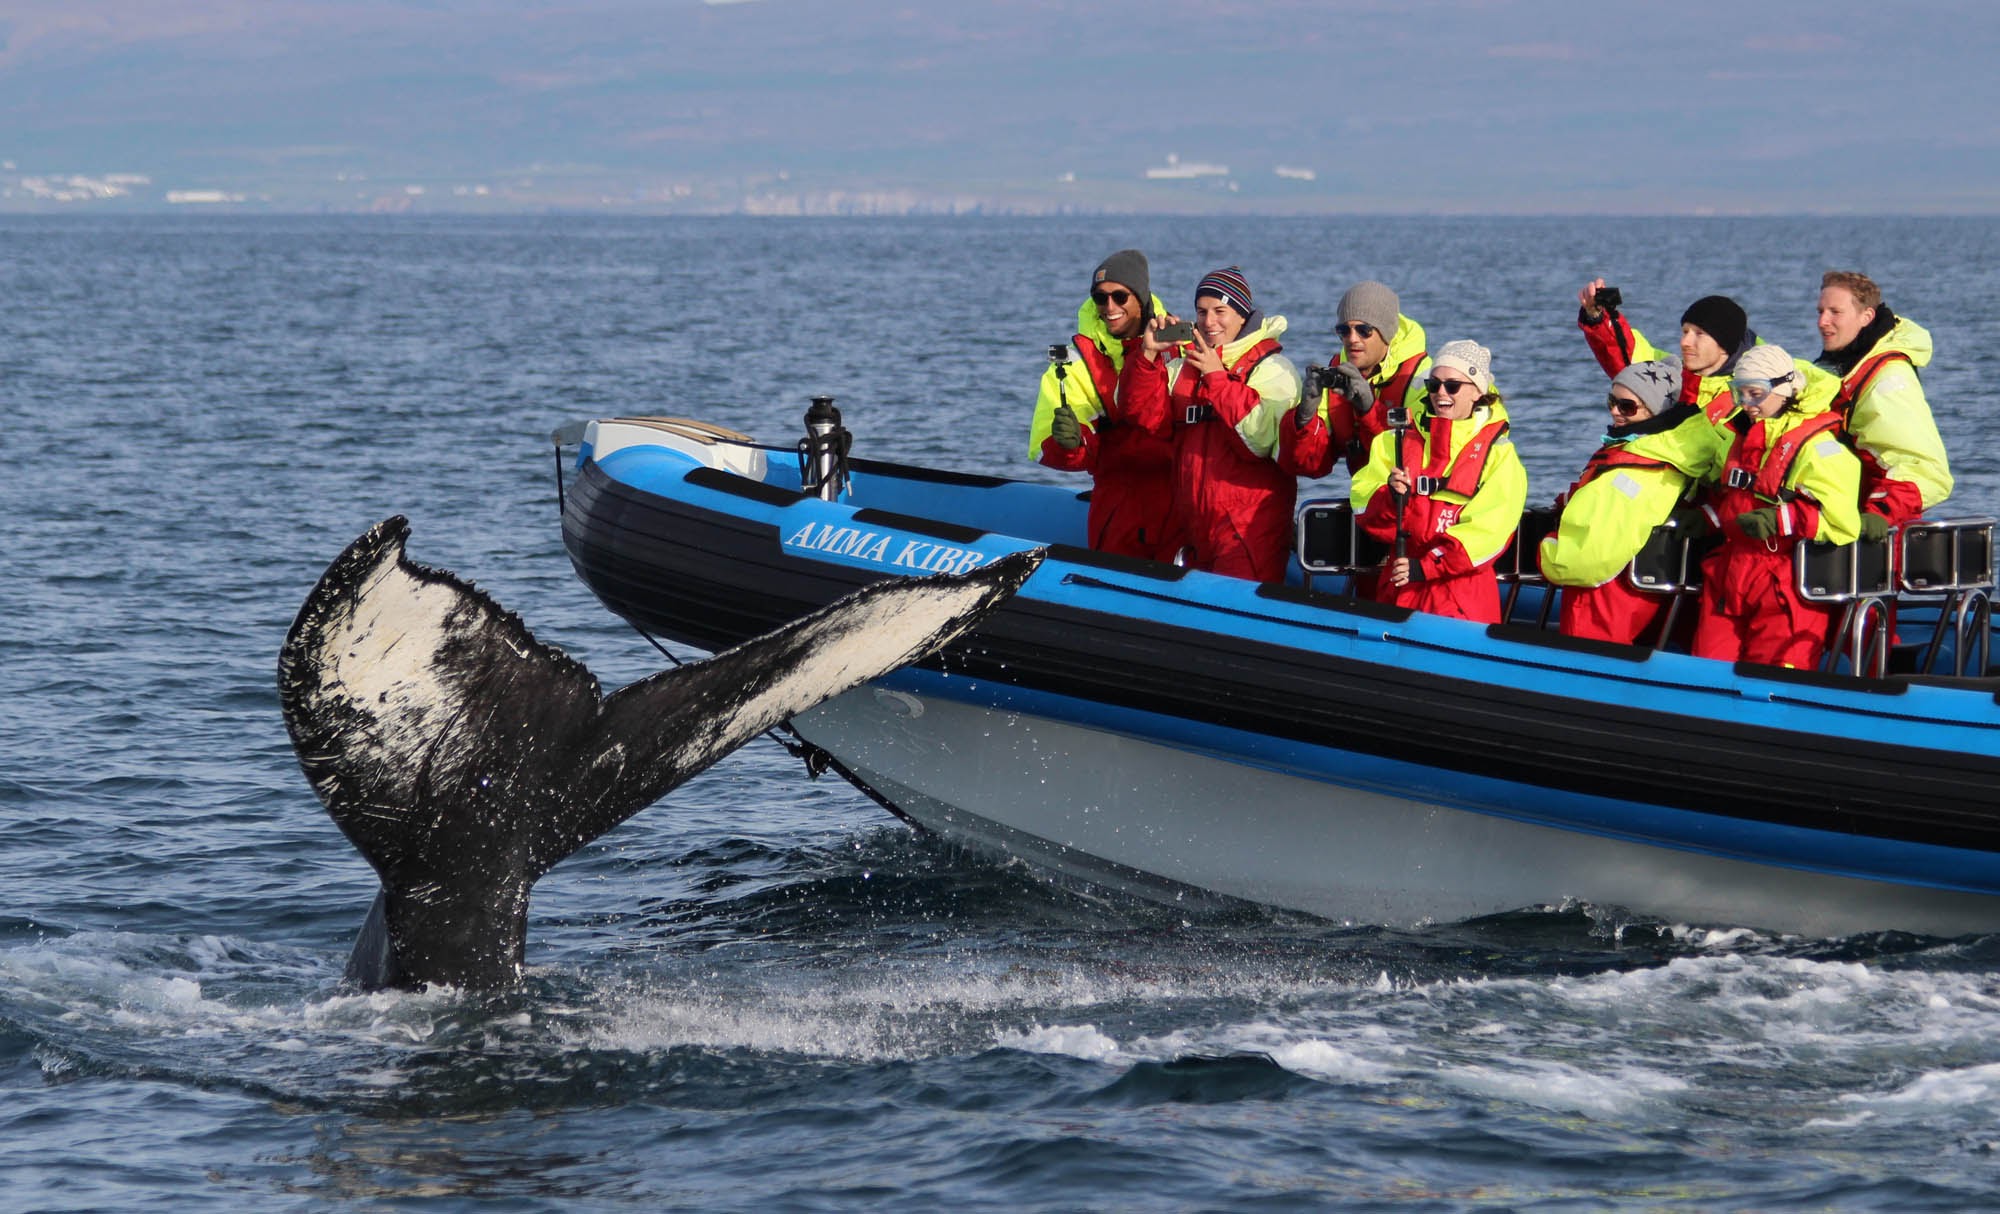 Tour độc đáo ngắm cá voi bảo vệ môi trường ở Iceland - 12